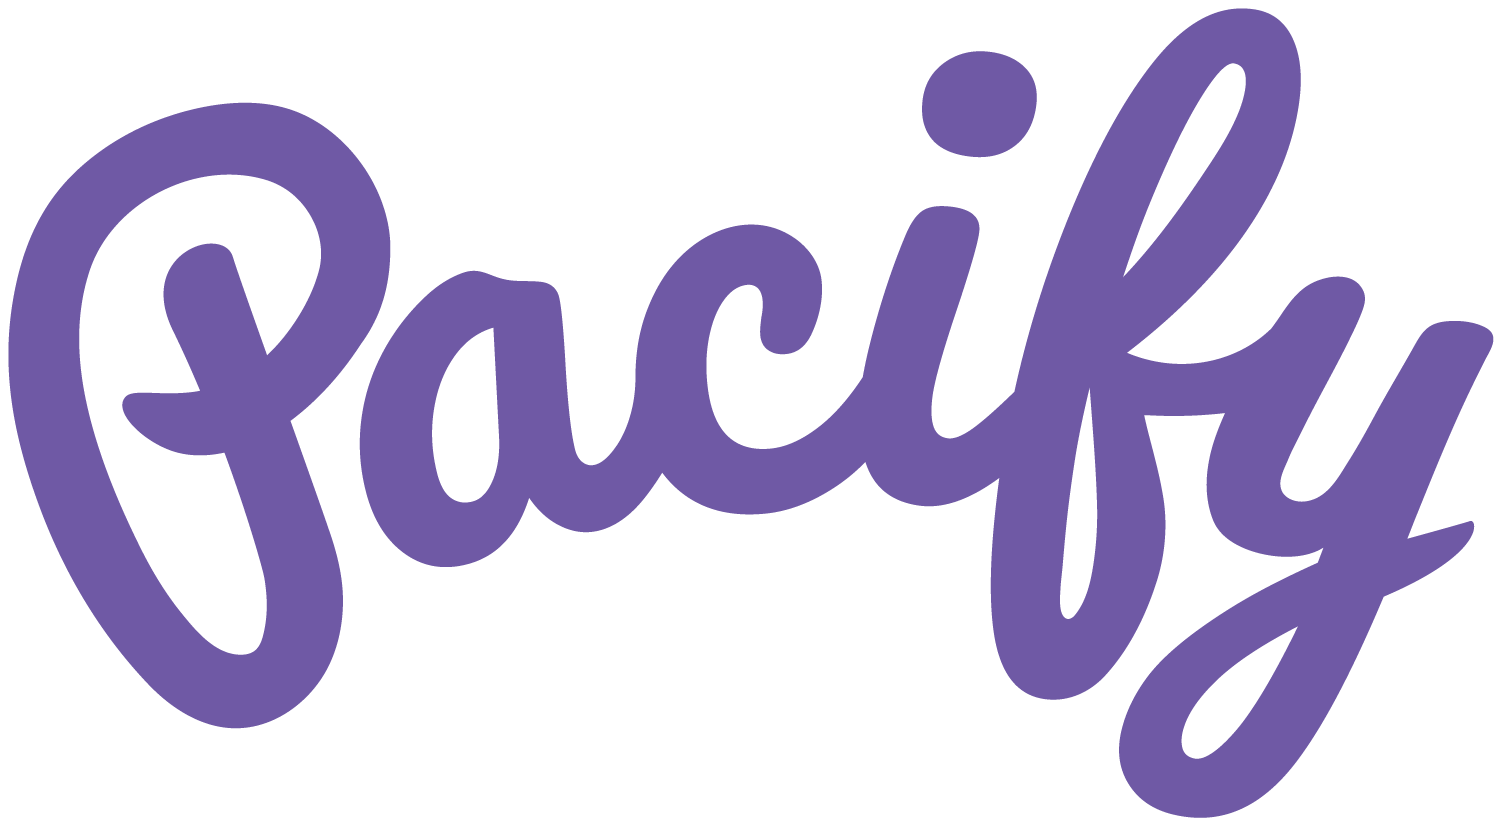 Pacify logo